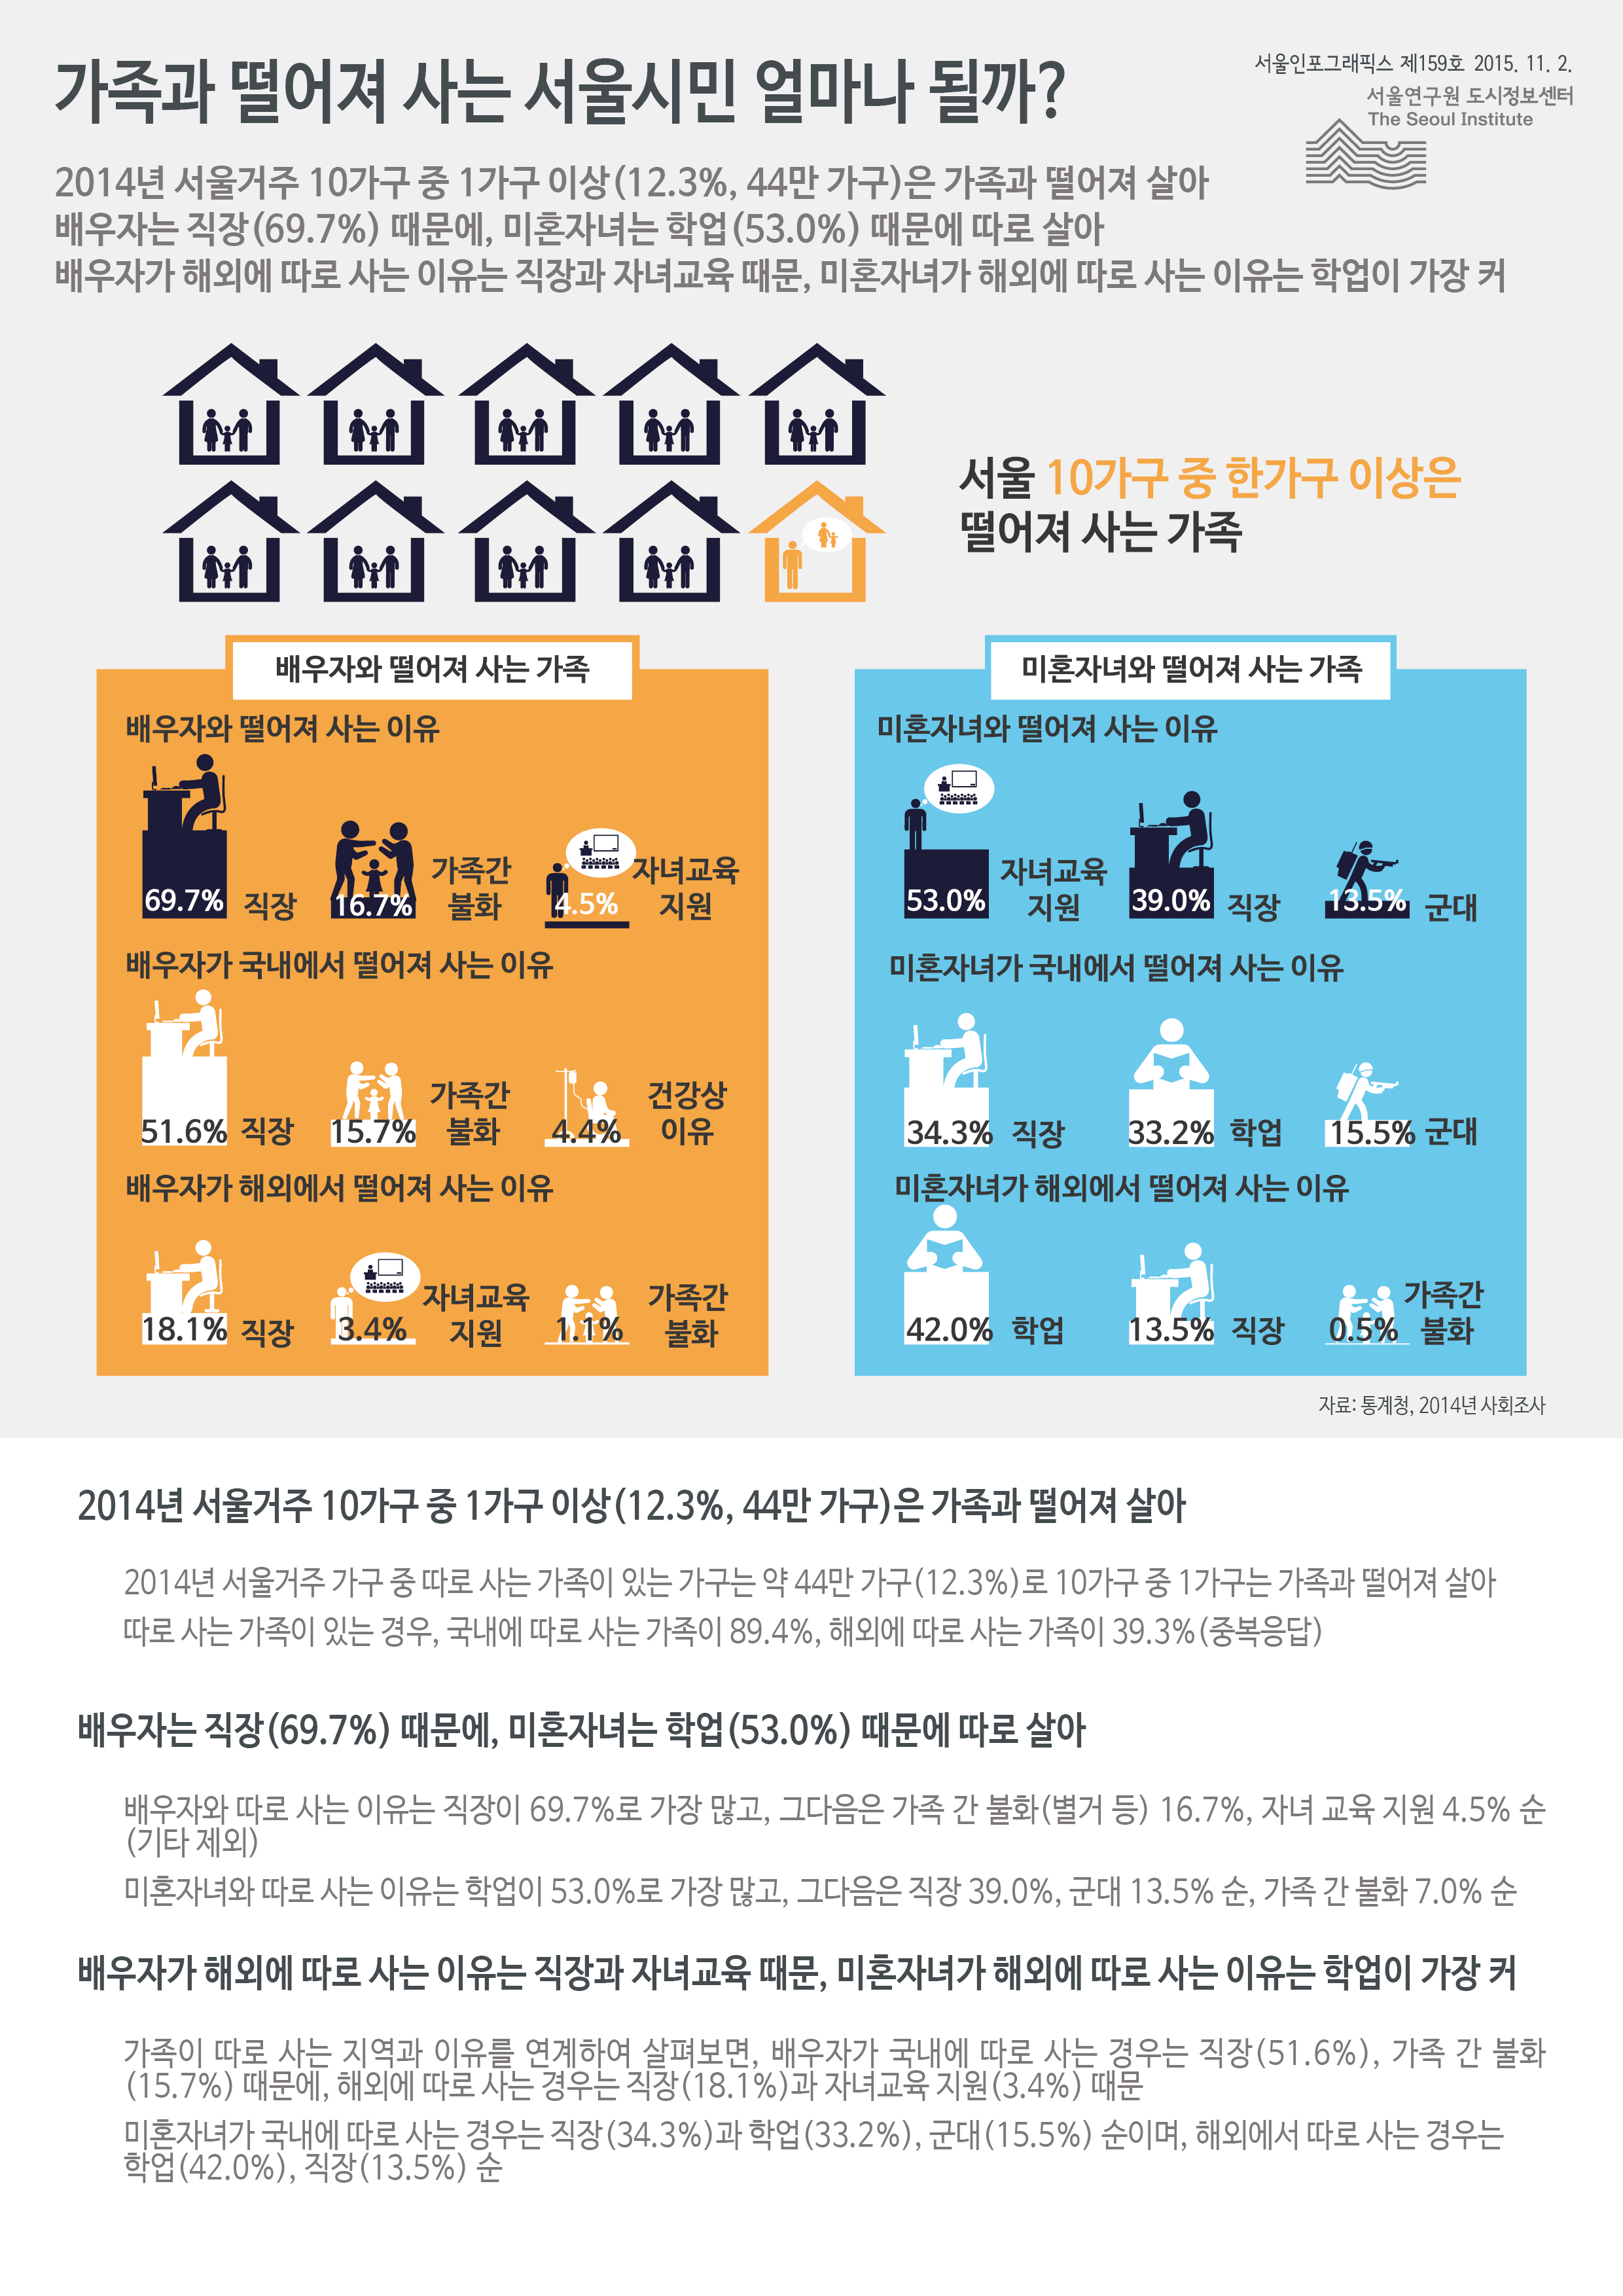 가족과 떨어져 사는 서울시민 얼마나 될까? 서울인포그래픽스 제159호 2015년 11월 2일 2014년 서울거주 10가구 중 1가구 이상(12.3%, 44만 가구)은 가족과 떨어져 삶. 배우자는 직장(69.7%) 때문에, 미혼자녀는 학업(53.0%) 때문에 따로 삶. 배우자가 해외에 따로 사는 이유는 직장과 자녀교육 때문, 미혼자녀가 해외에 따로 사는 이유는 학업이 가장 큼으로 정리될 수 있습니다. 인포그래픽으로 제공되는 그래픽은 하단에 표로 자세히 제공됩니다.